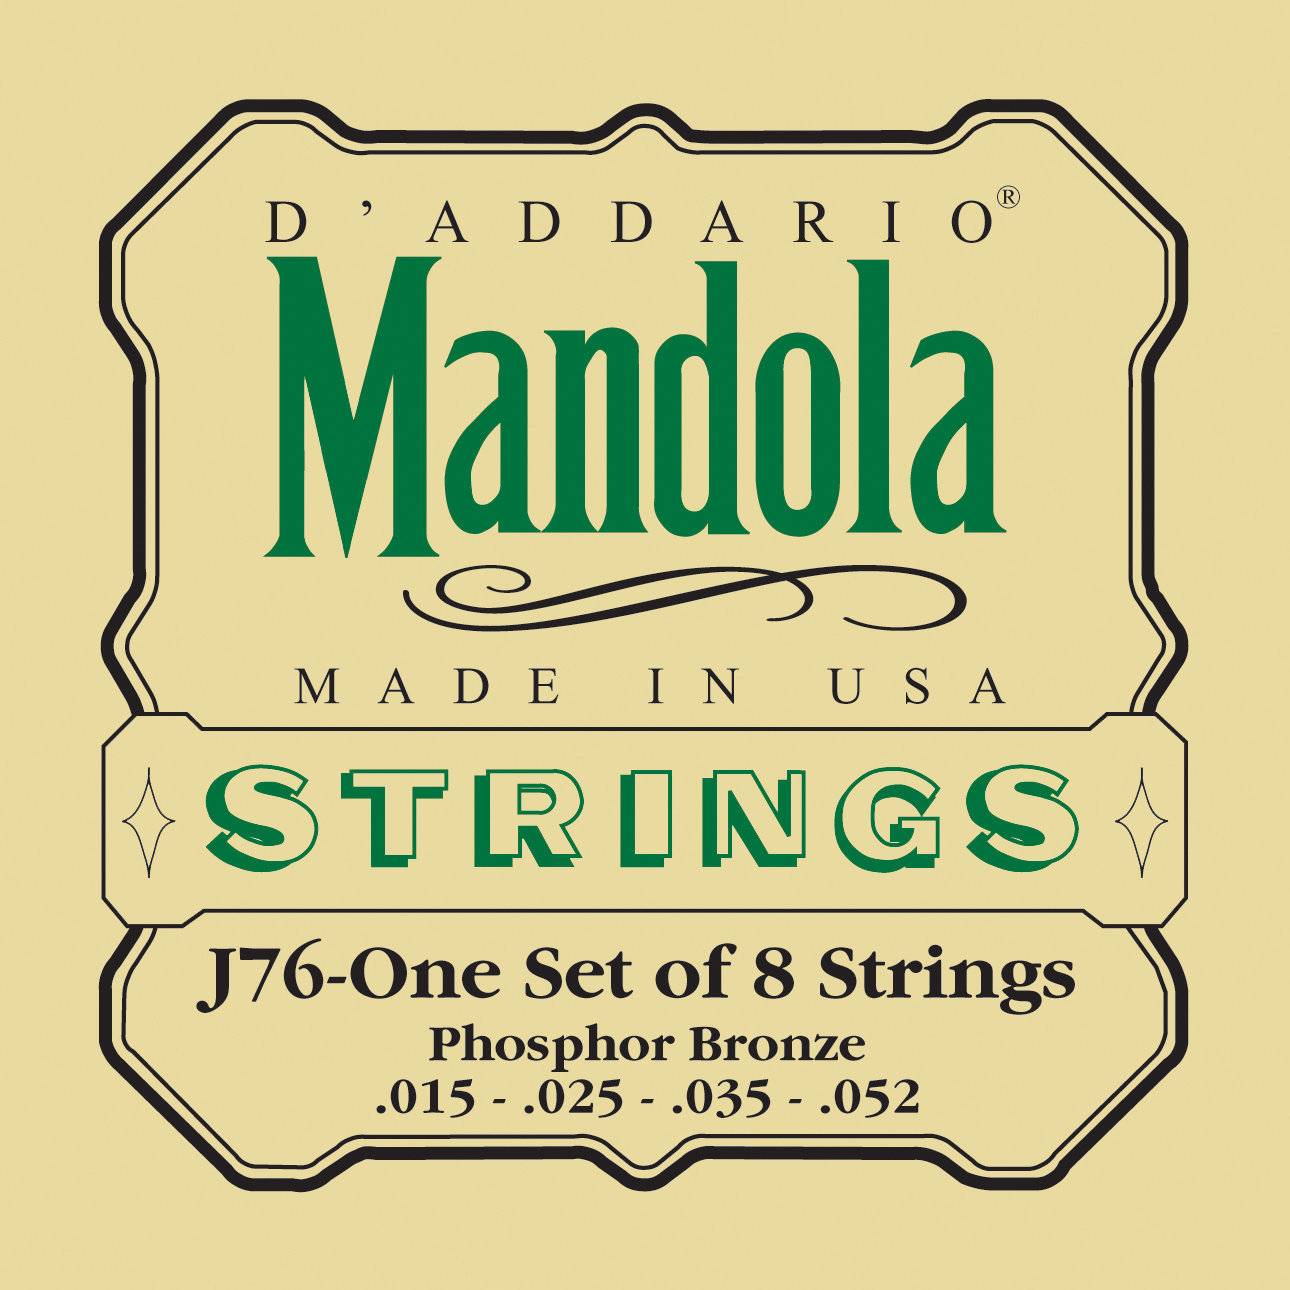 Cordas para bandolim D'Addario J76 Mandolin Strings